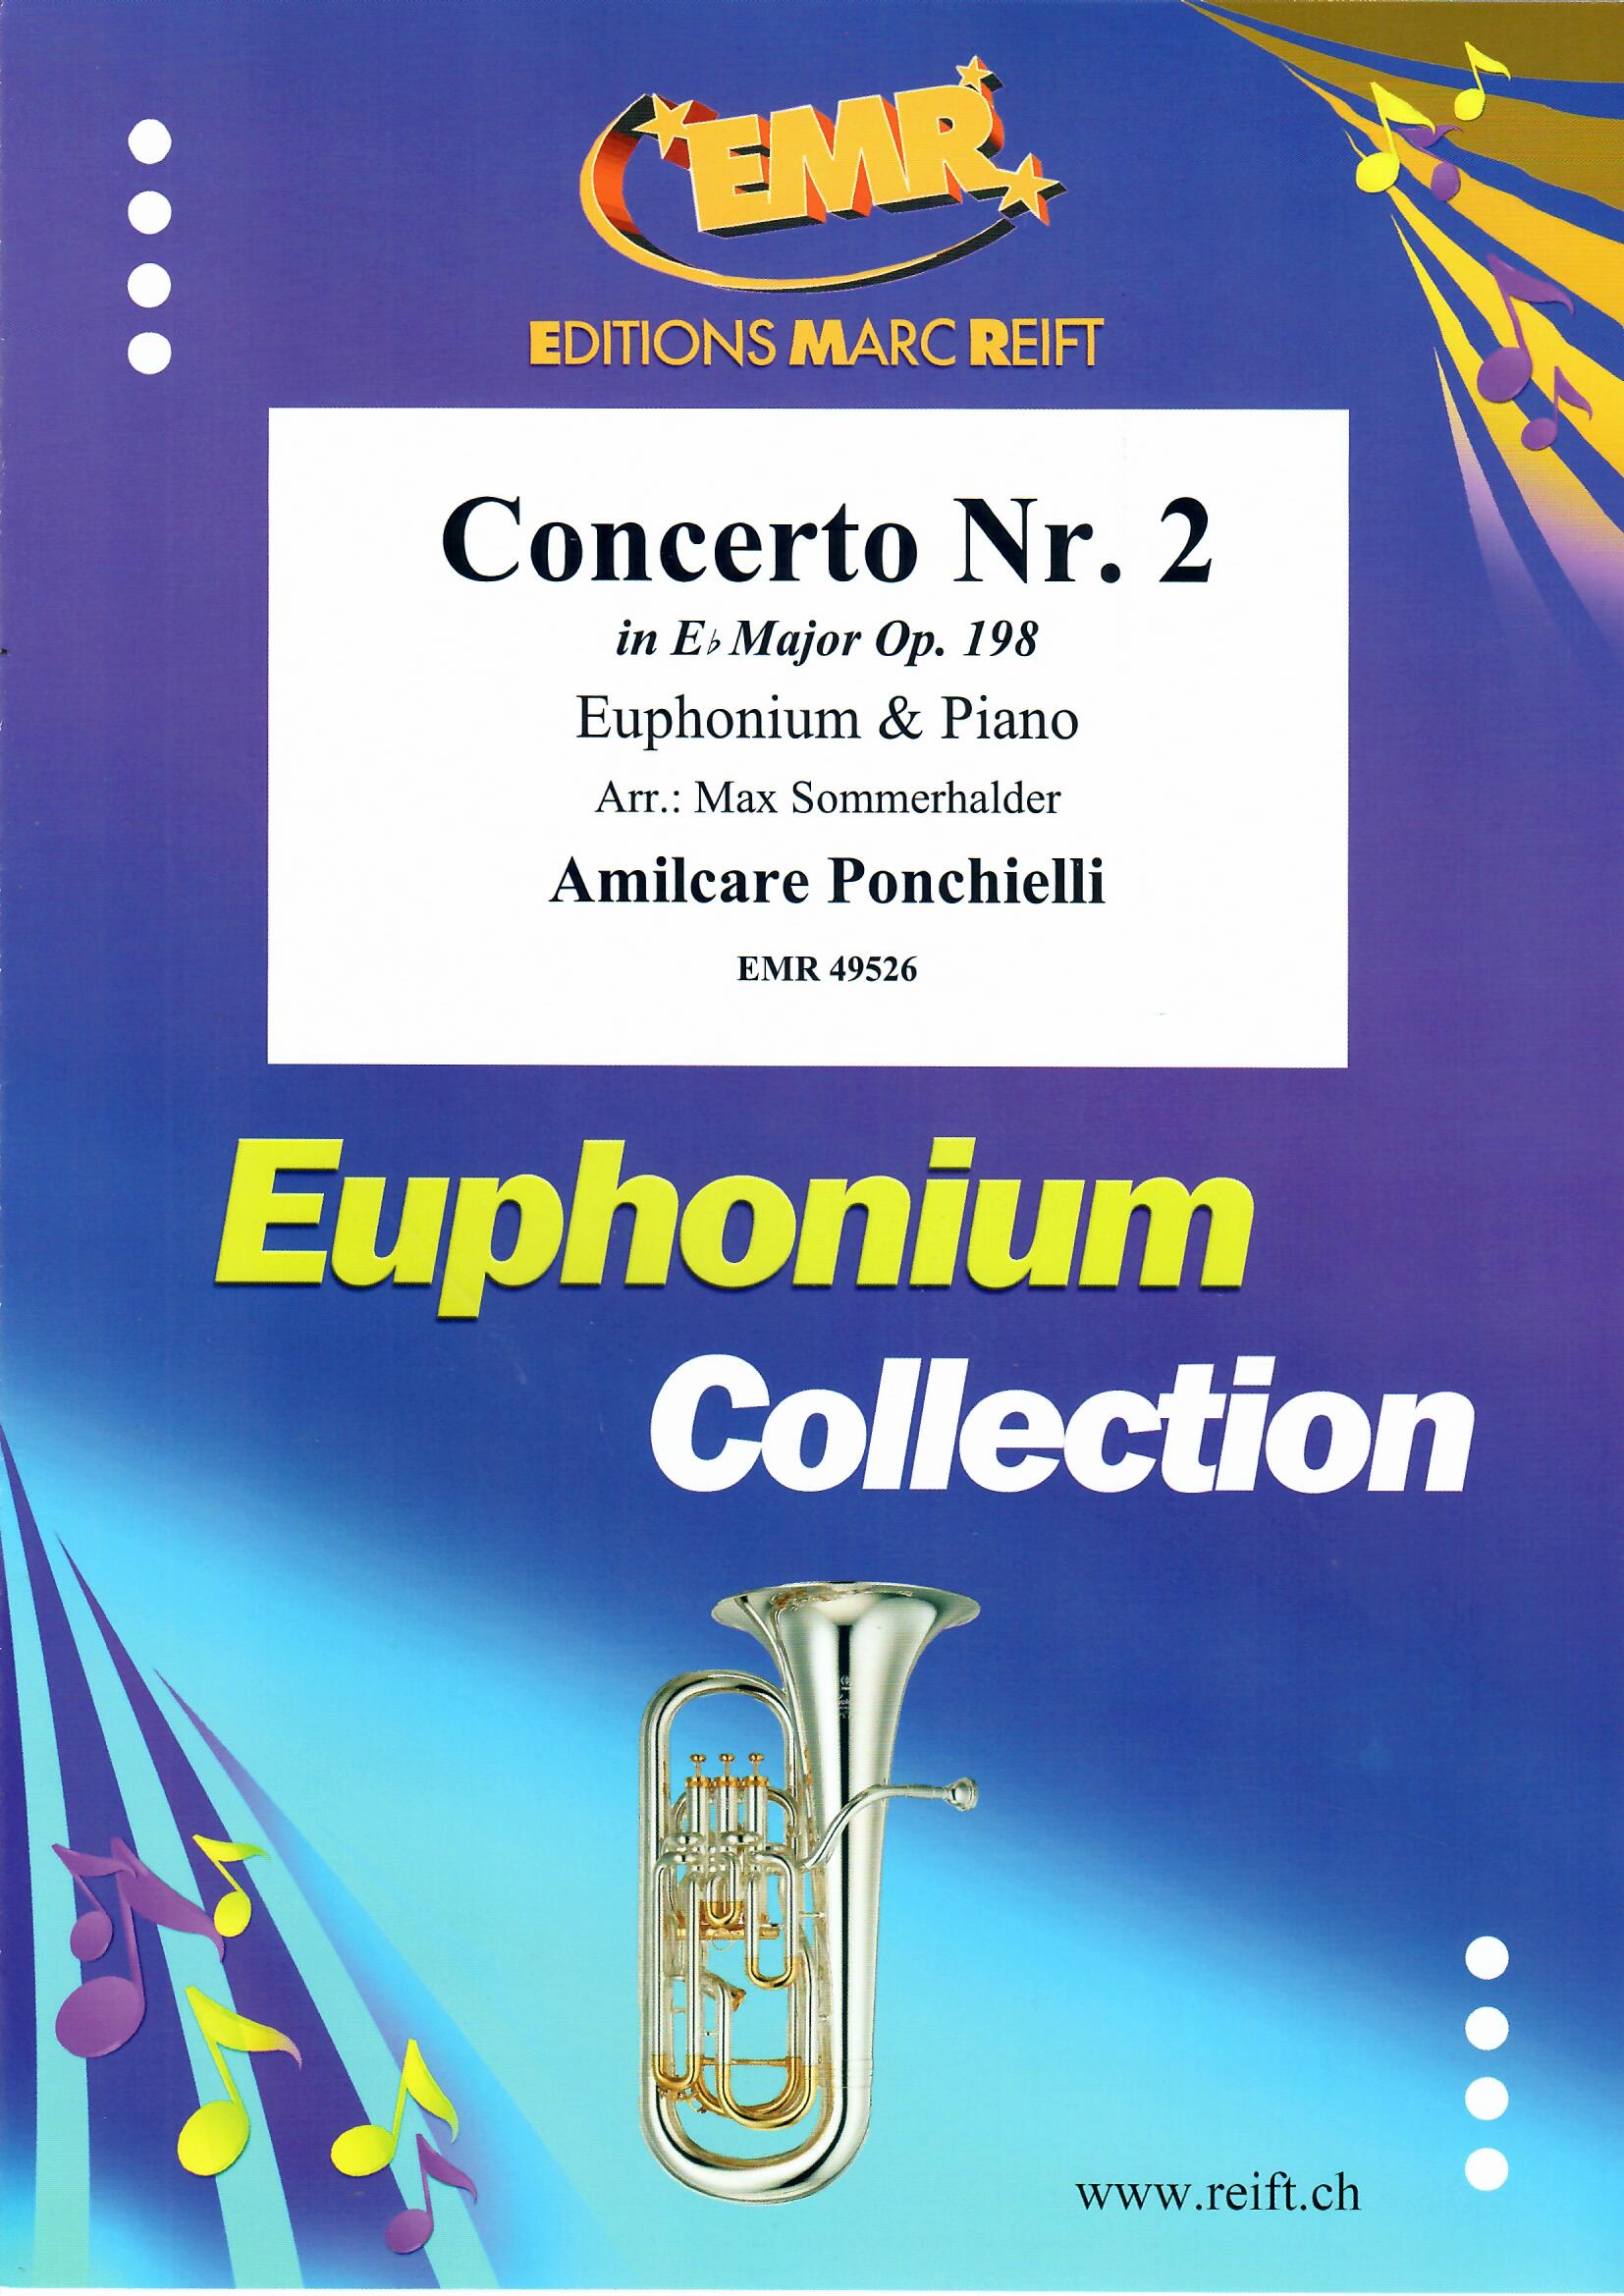 CONCERTO NR. 2 - Euphonium & Piano, SOLOS - Euphonium